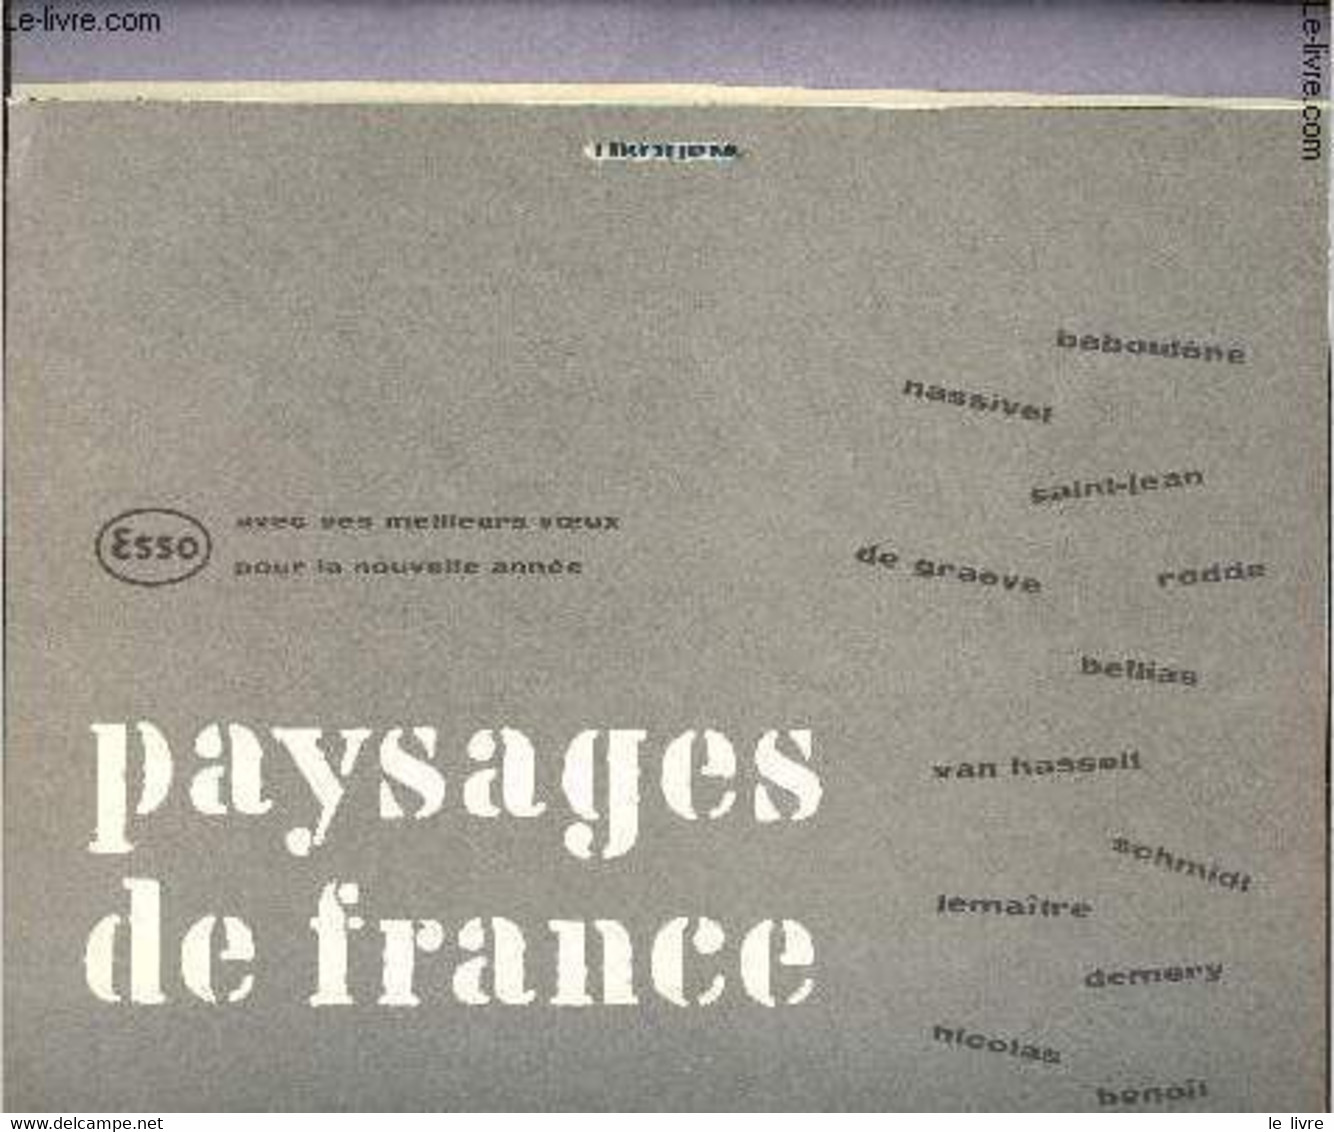 Calendrier Esso Service Du Libournais - Paysages De France - 1959 - Esso Service Du Libournais - 1959 - Agendas & Calendriers